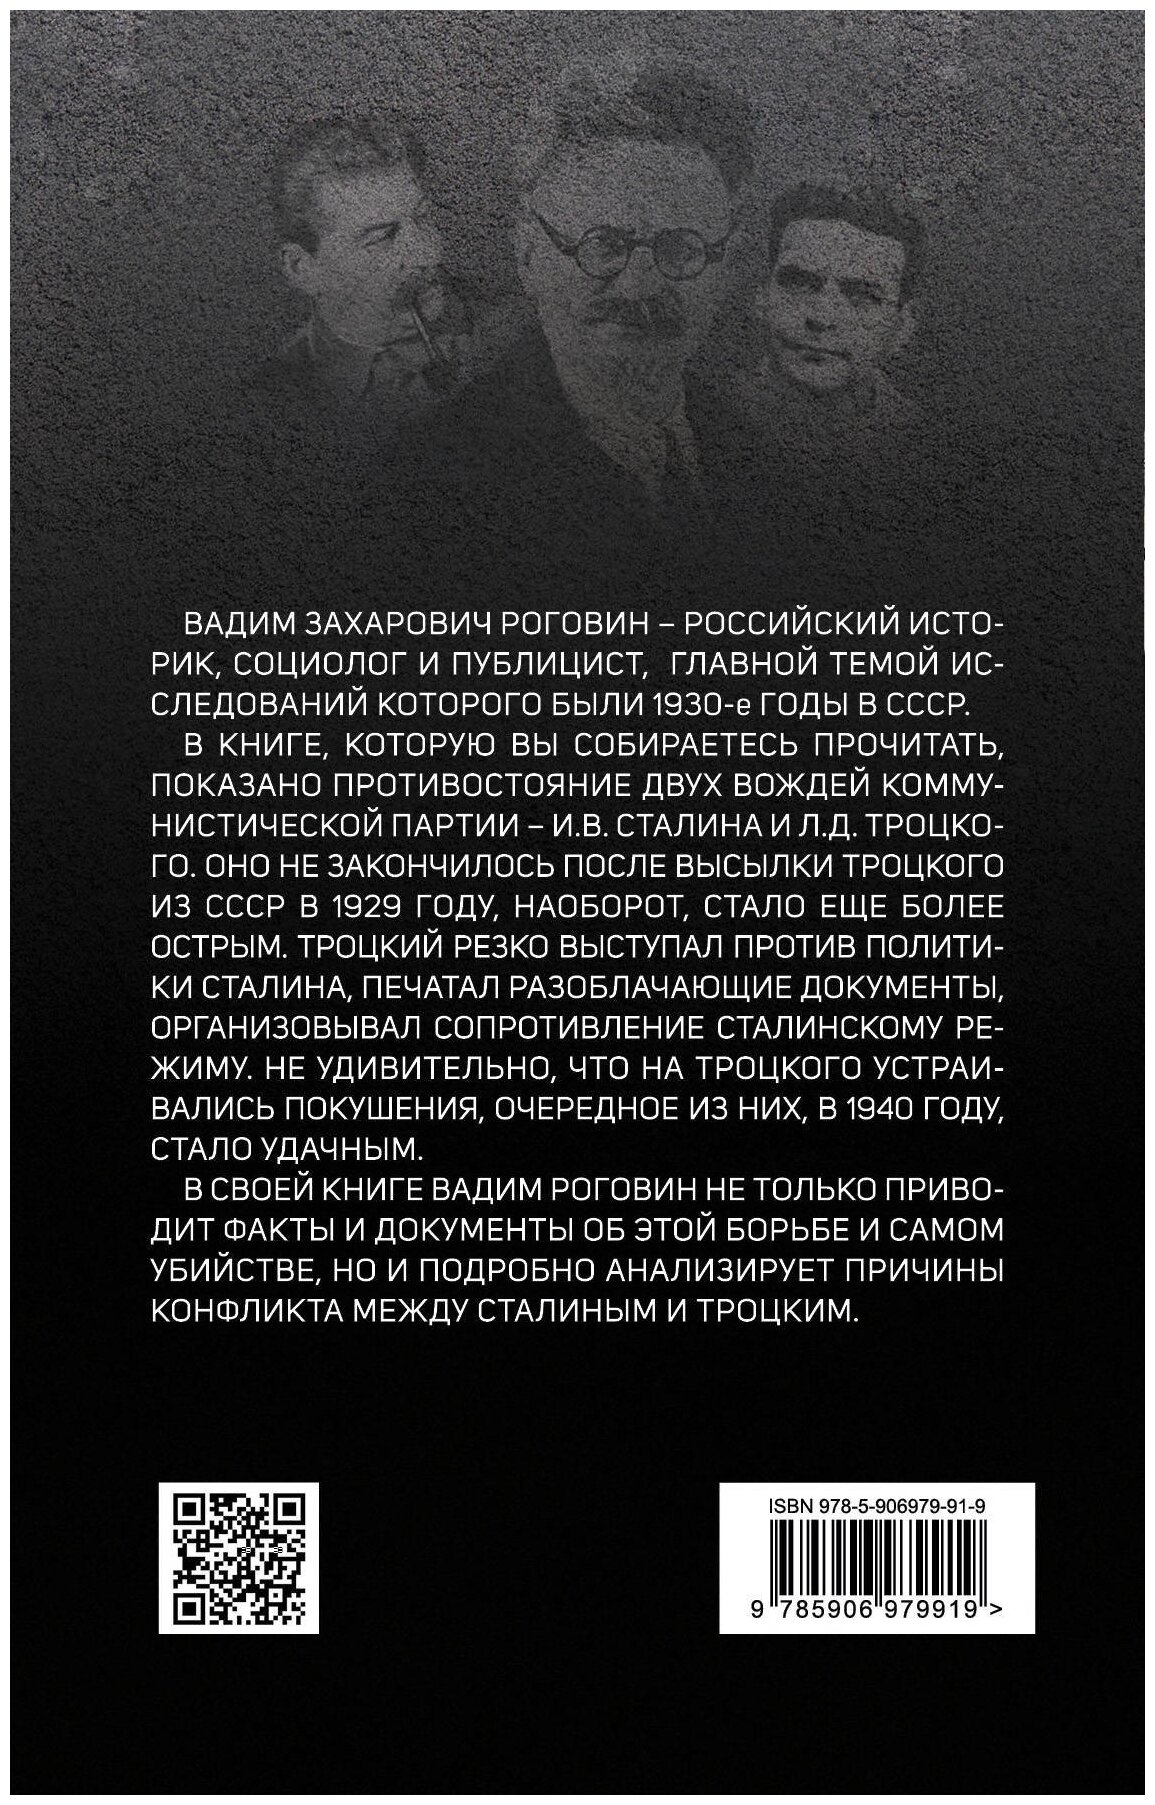 Главный враг Сталина. Как был убит Троцкий - фото №2